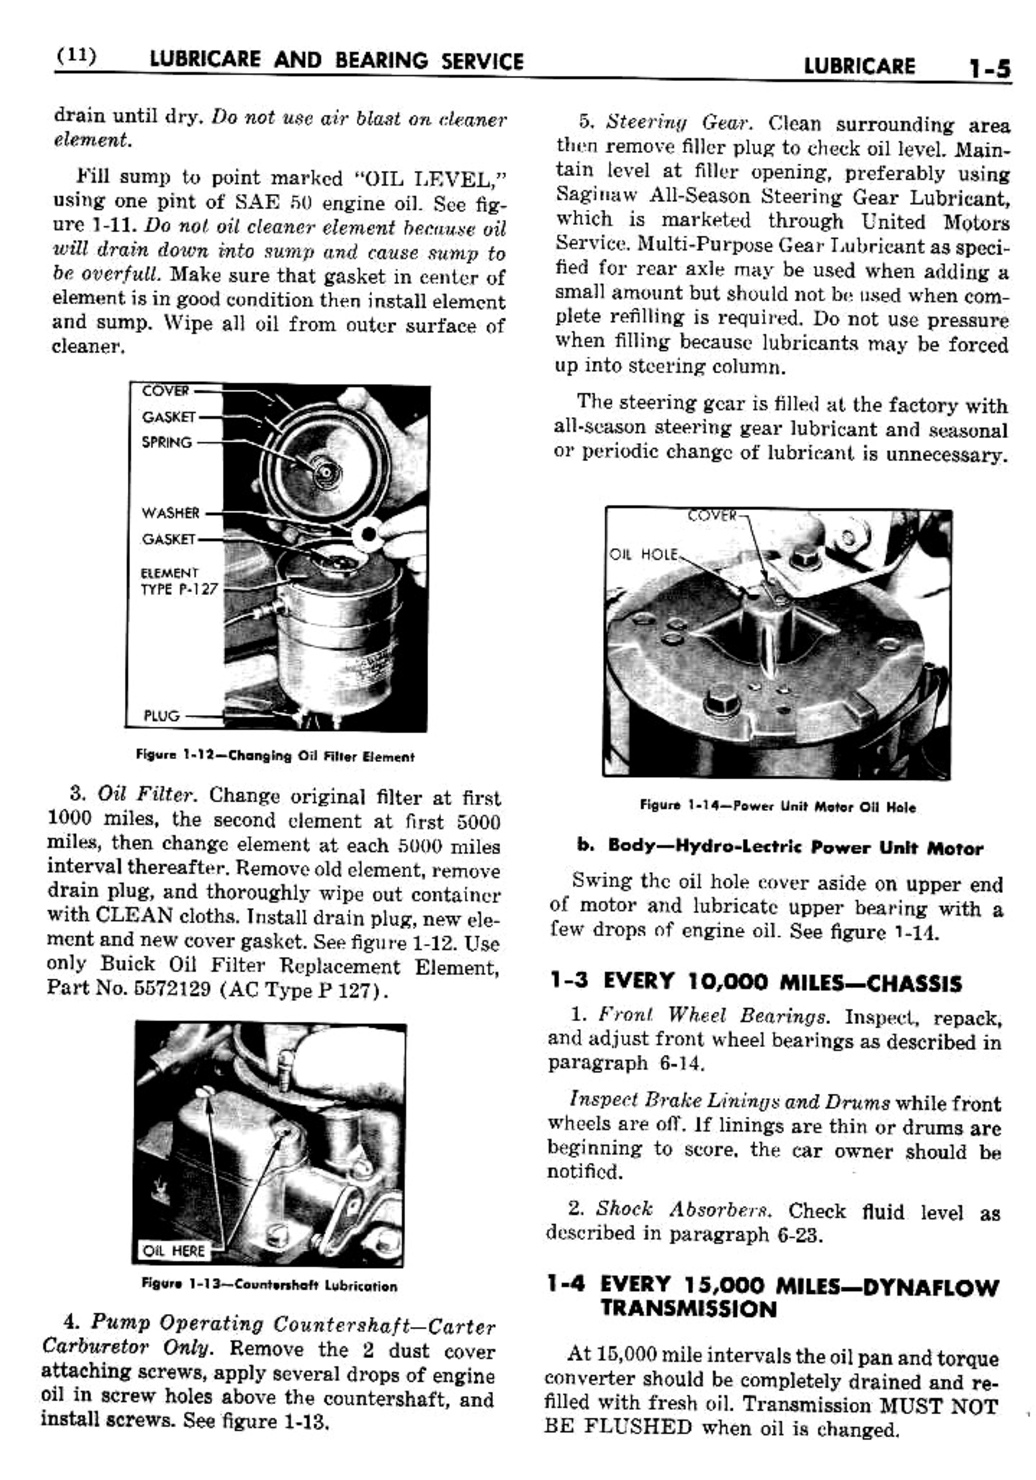 n_02 1950 Buick Shop Manual - Lubricare-005-005.jpg